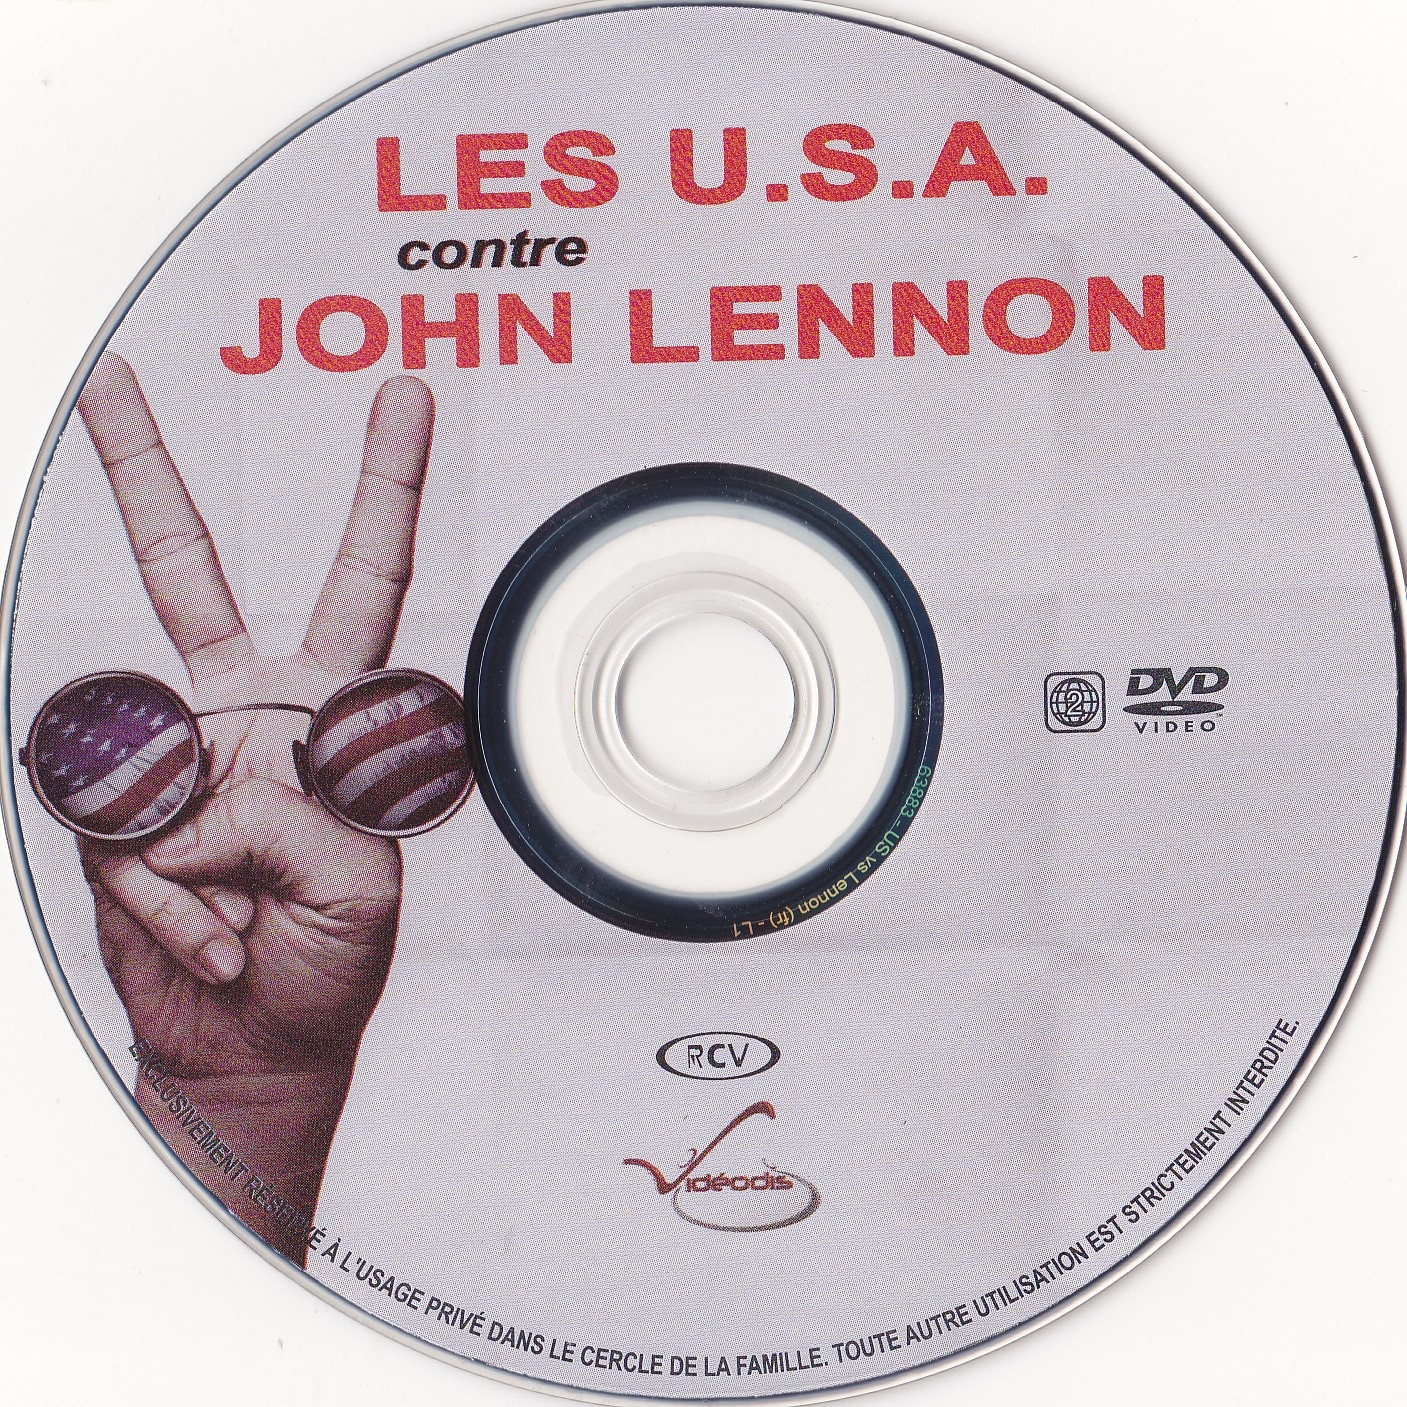 Les USA Contre John Lennon